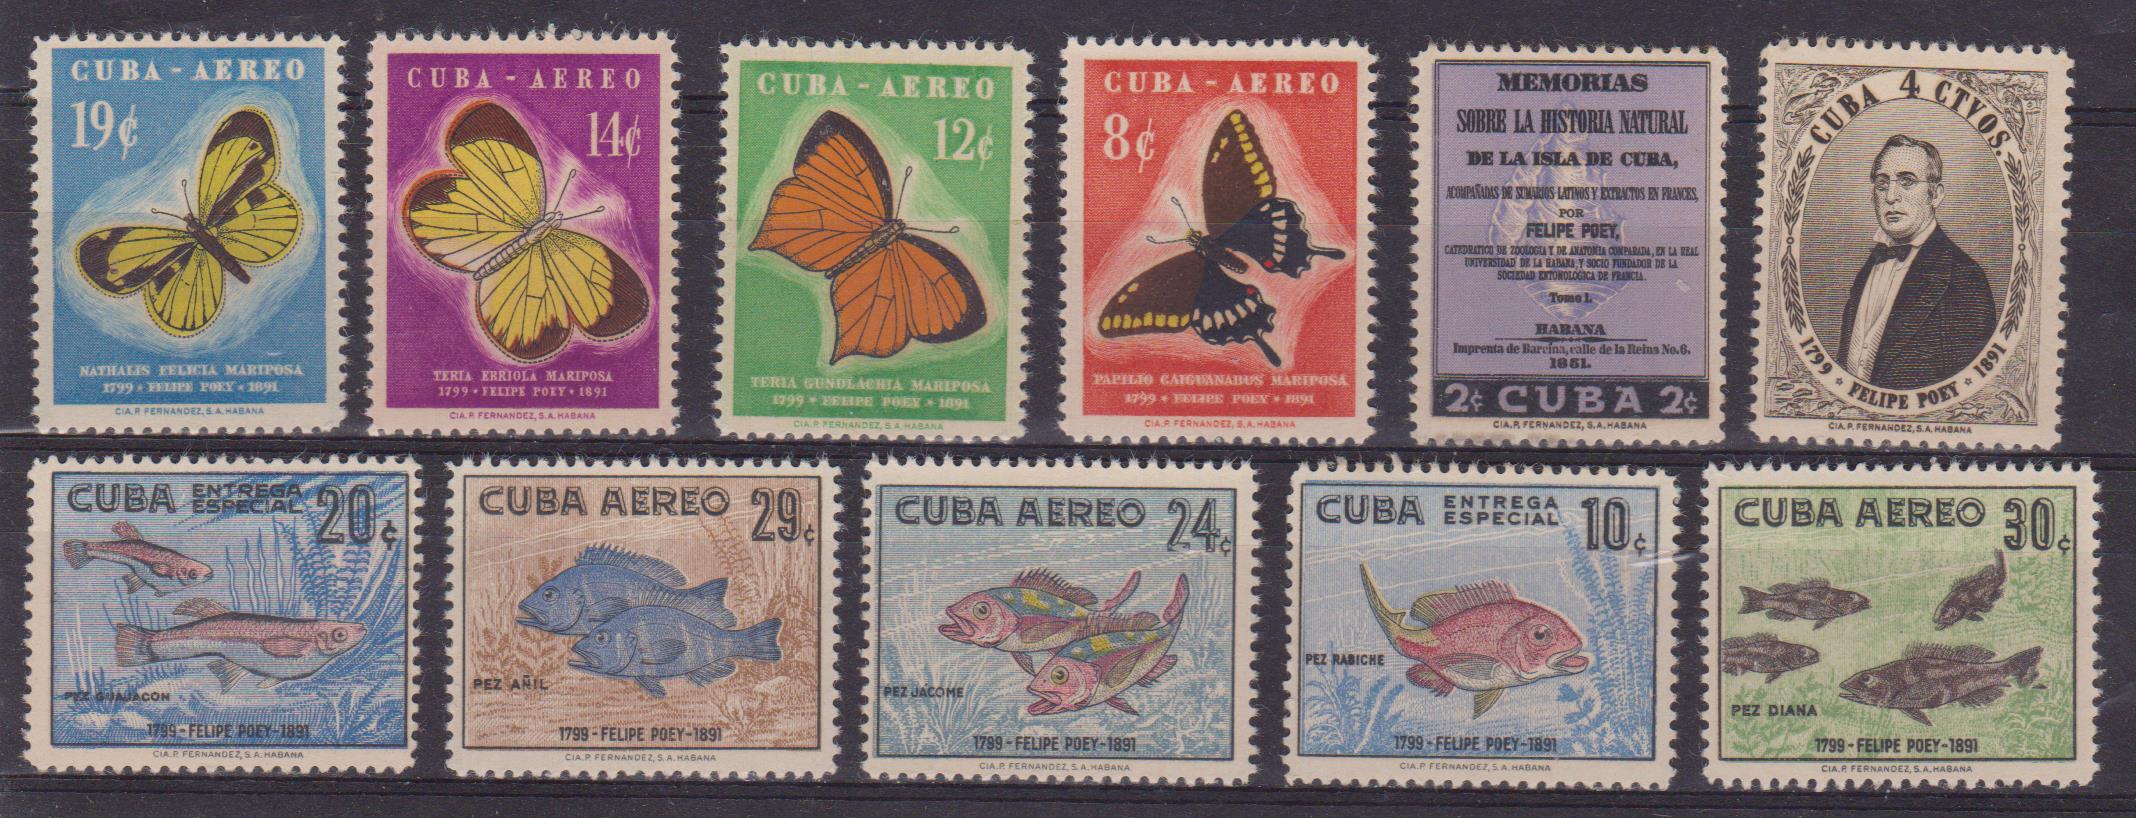 Cuba 493+ 001